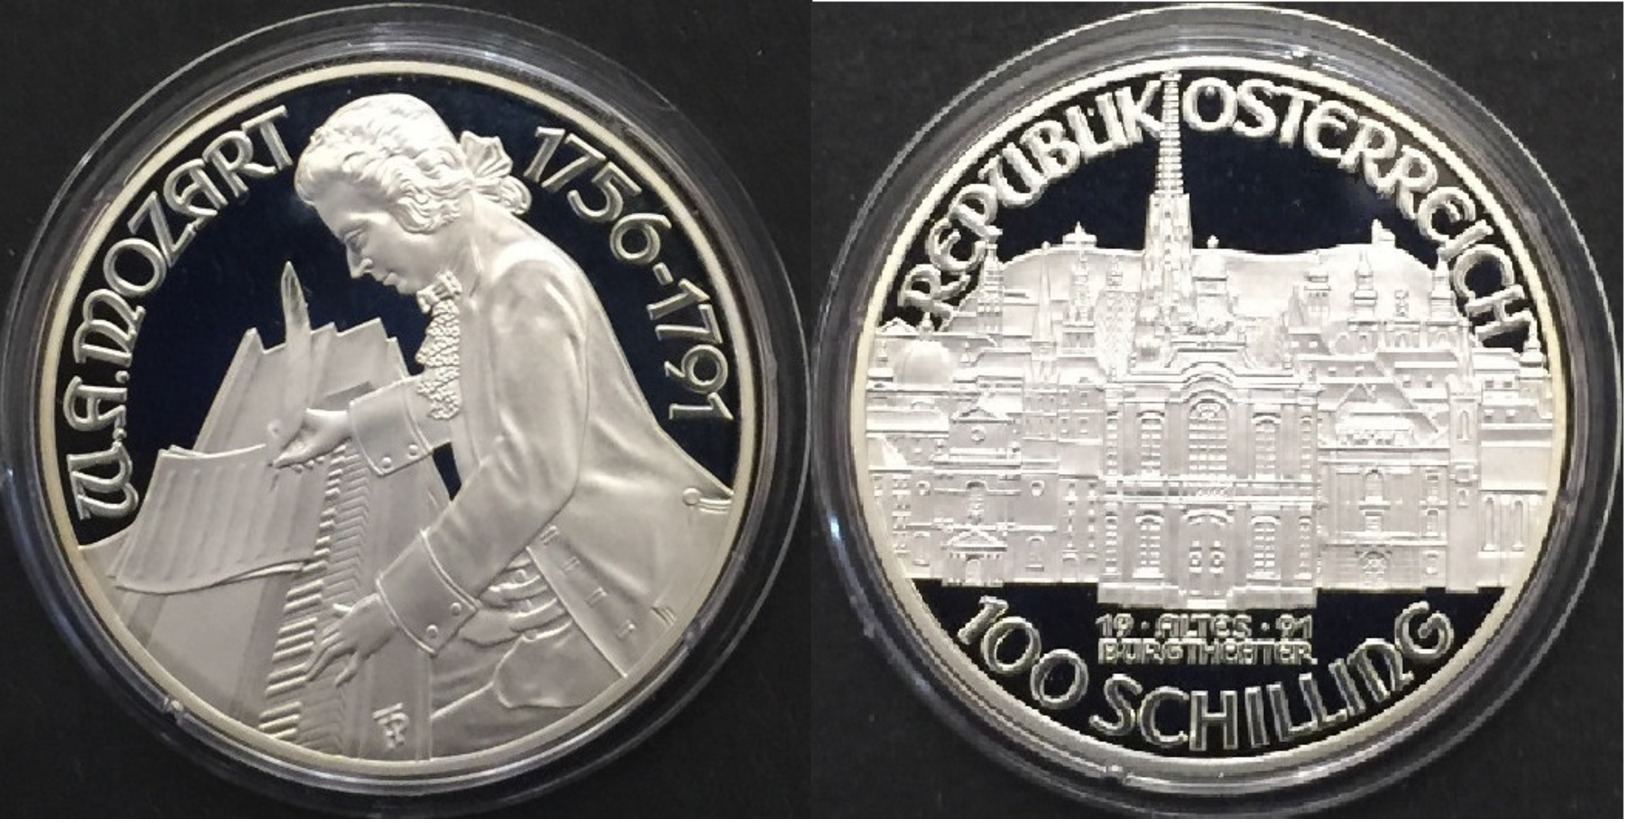 Autriche, 100 Schilling 1991 Argent / Silver Proof - Autriche